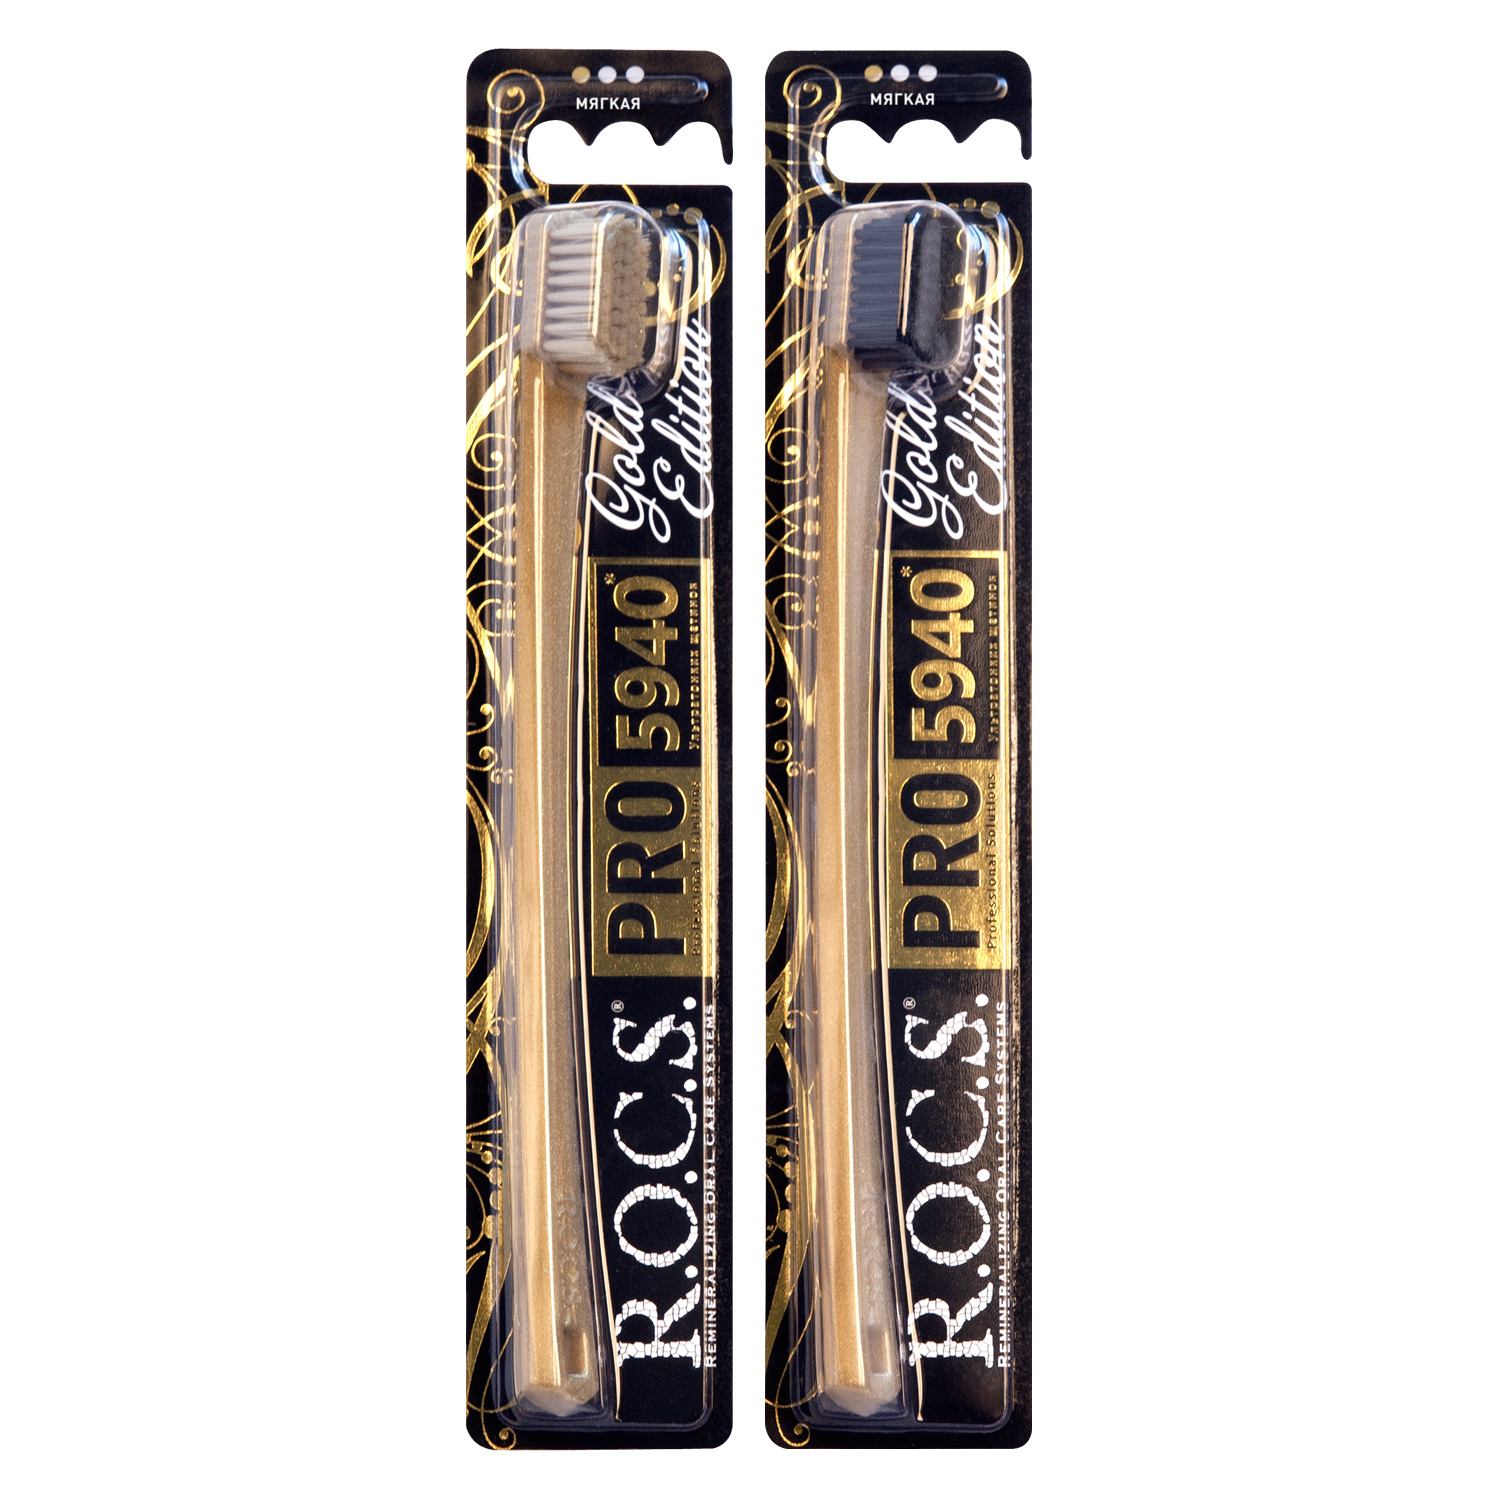 R.O.C.S. Зубная щетка мягкая PRO Gold Edition (R.O.C.S., R.O.C.S. PRO)